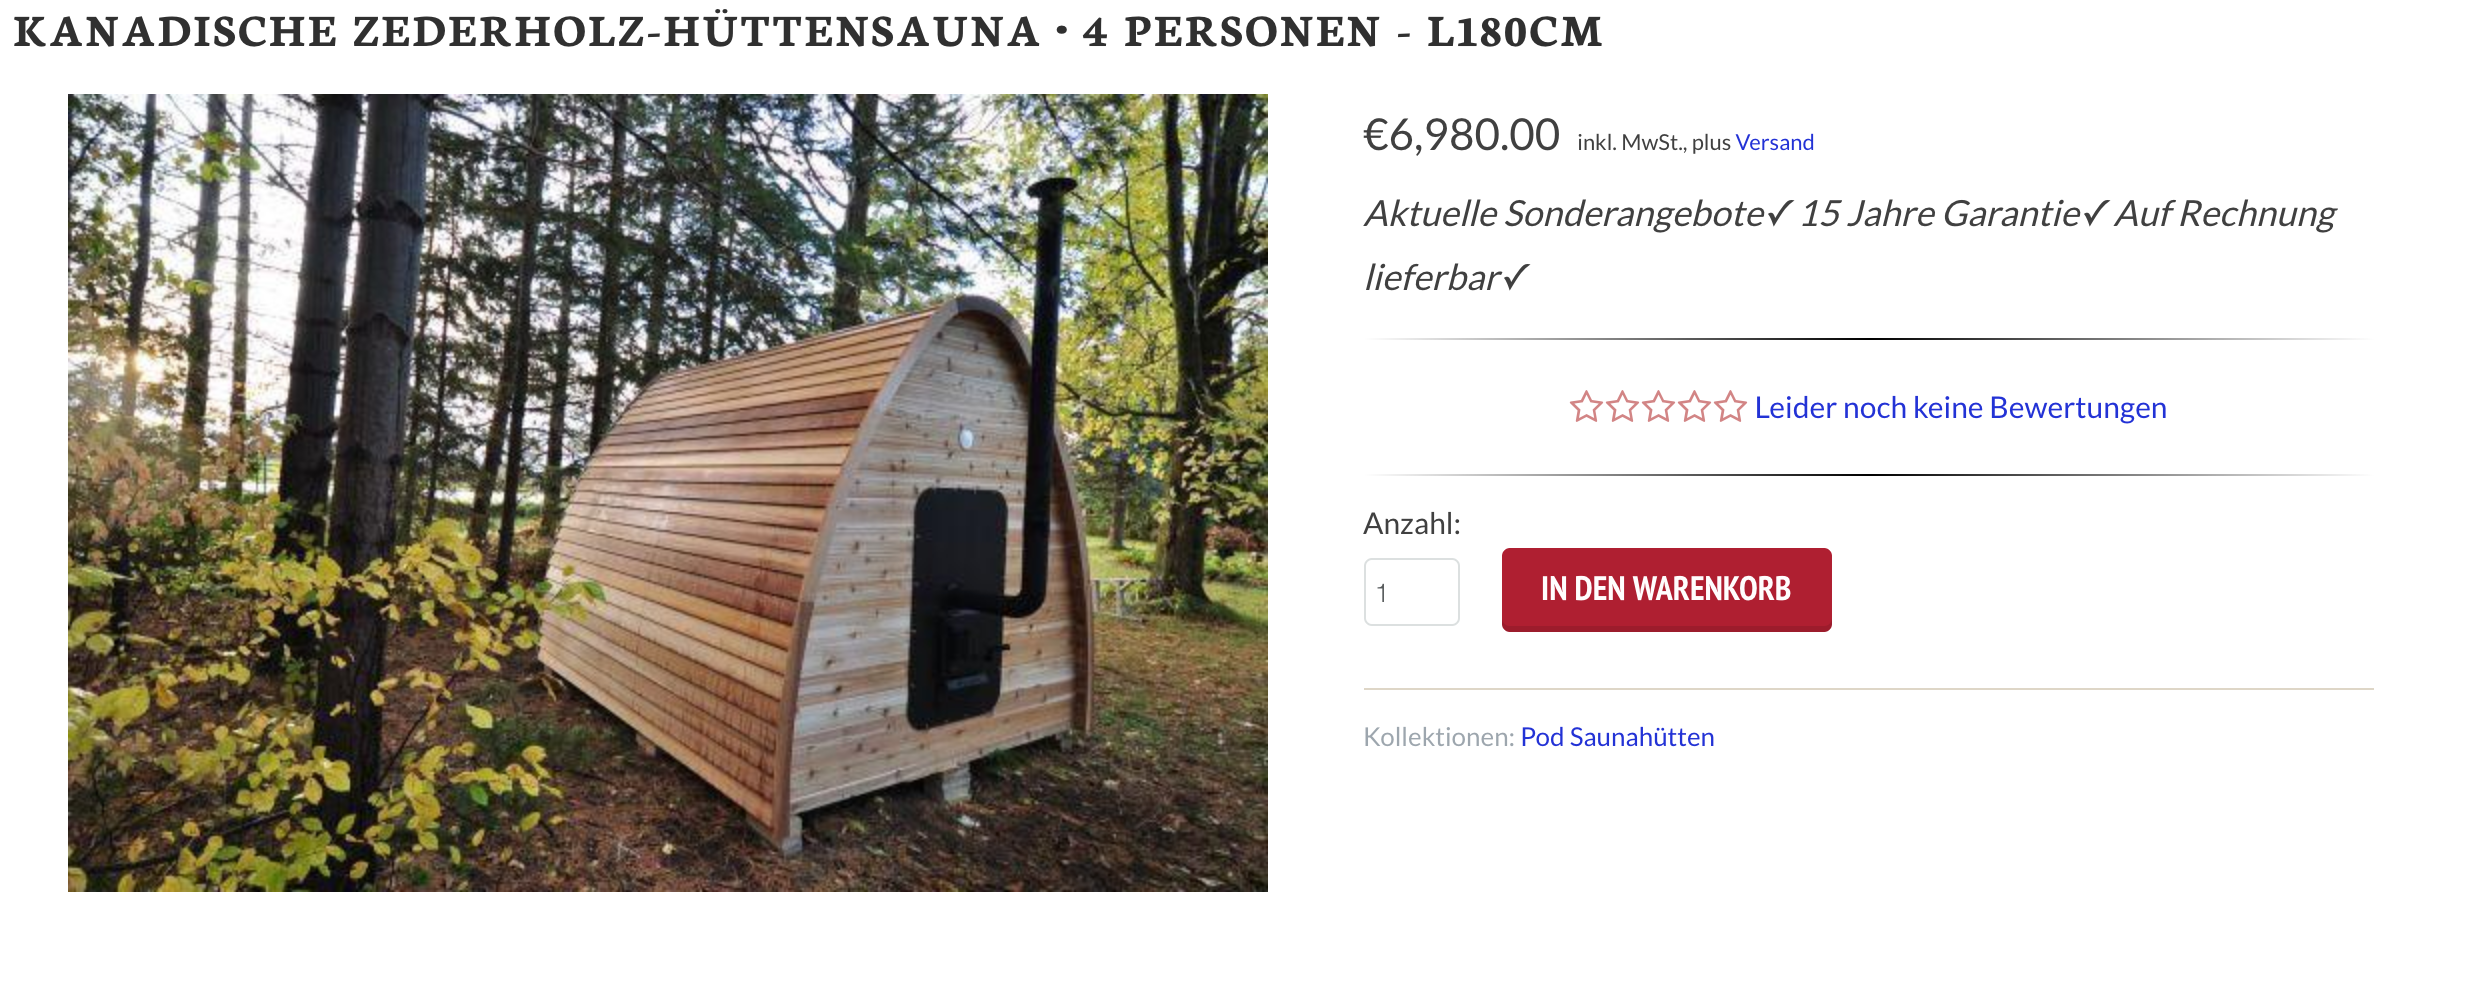 Eine Fass-Sauna aus Kanada